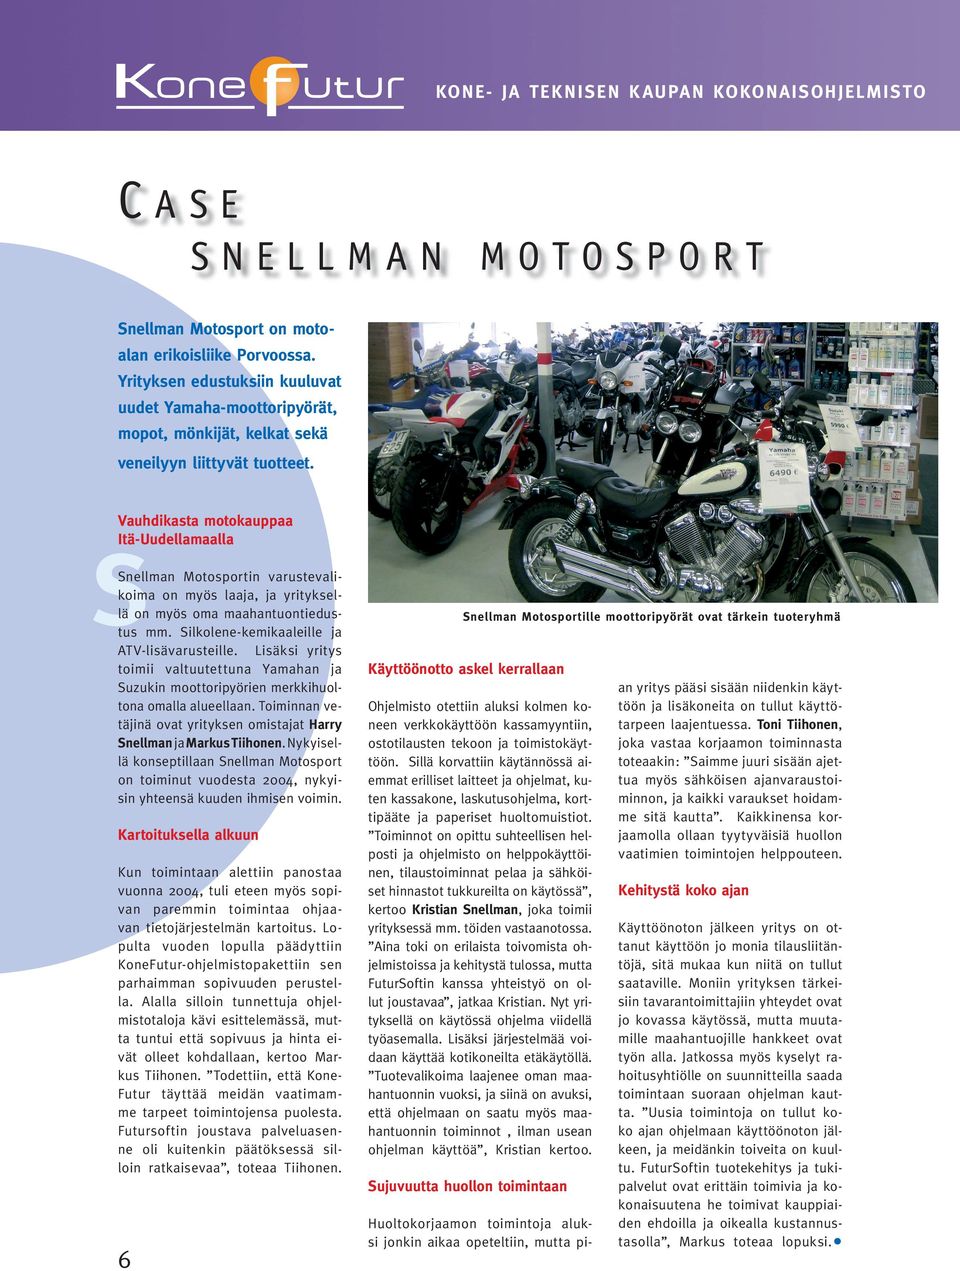 Vauhdikasta motokauppaa Itä-Uudellamaalla Snellman Motosportin varuste valikoi ma on myös laaja, ja yrityksellä on myös oma maahantuonti edus- Stus mm. Silkolene-kemikaaleille ja ATV- lisävarusteille.